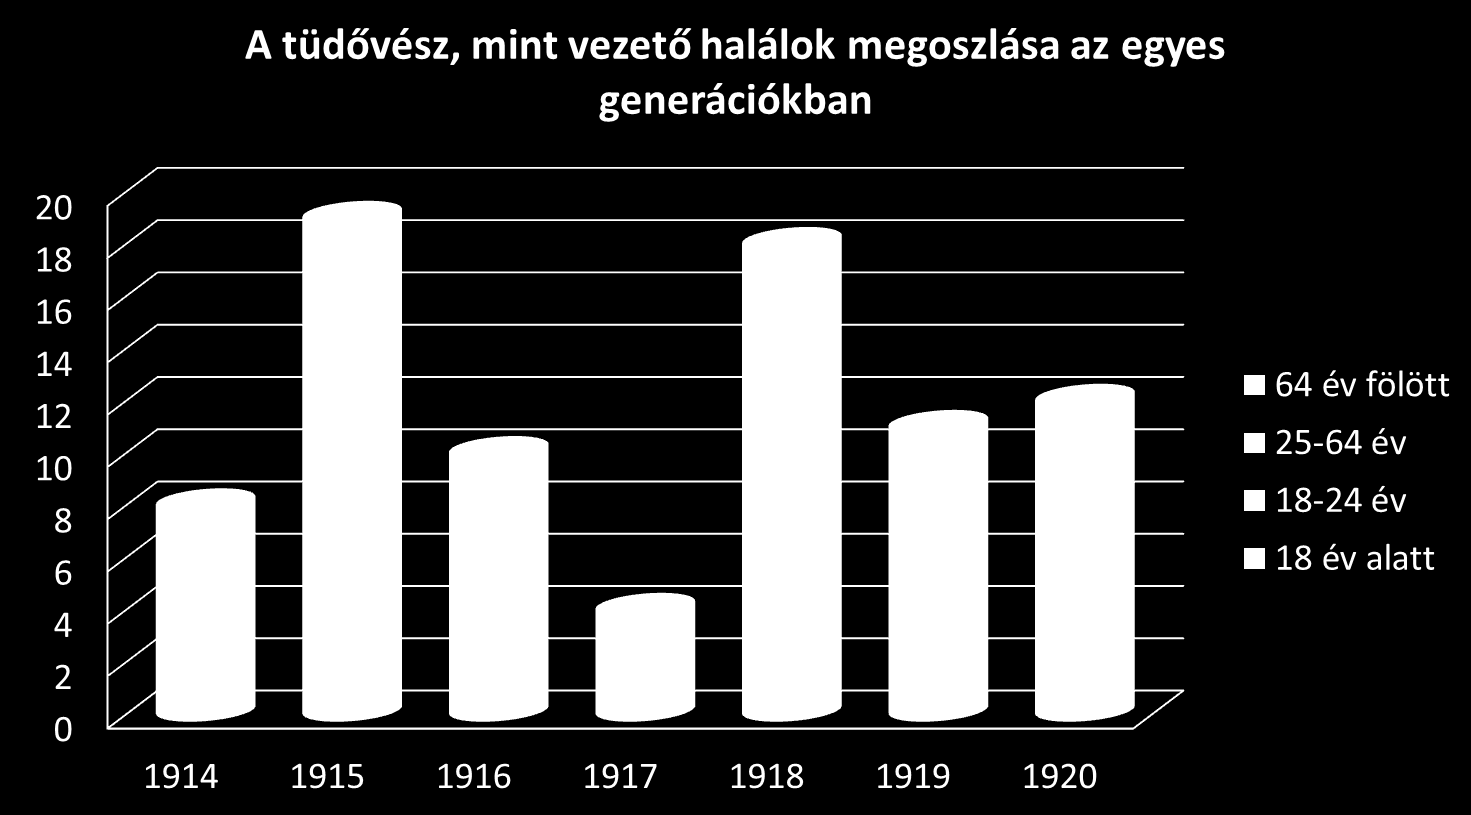 Az ezt követő években jelentősen visszaesett a gümőkóros halálesetek száma. A háború utolsó évében, 1918-ban ismét kiugróan magas lett a tüdővészes halálozások száma. Ennek okaként a már 4.